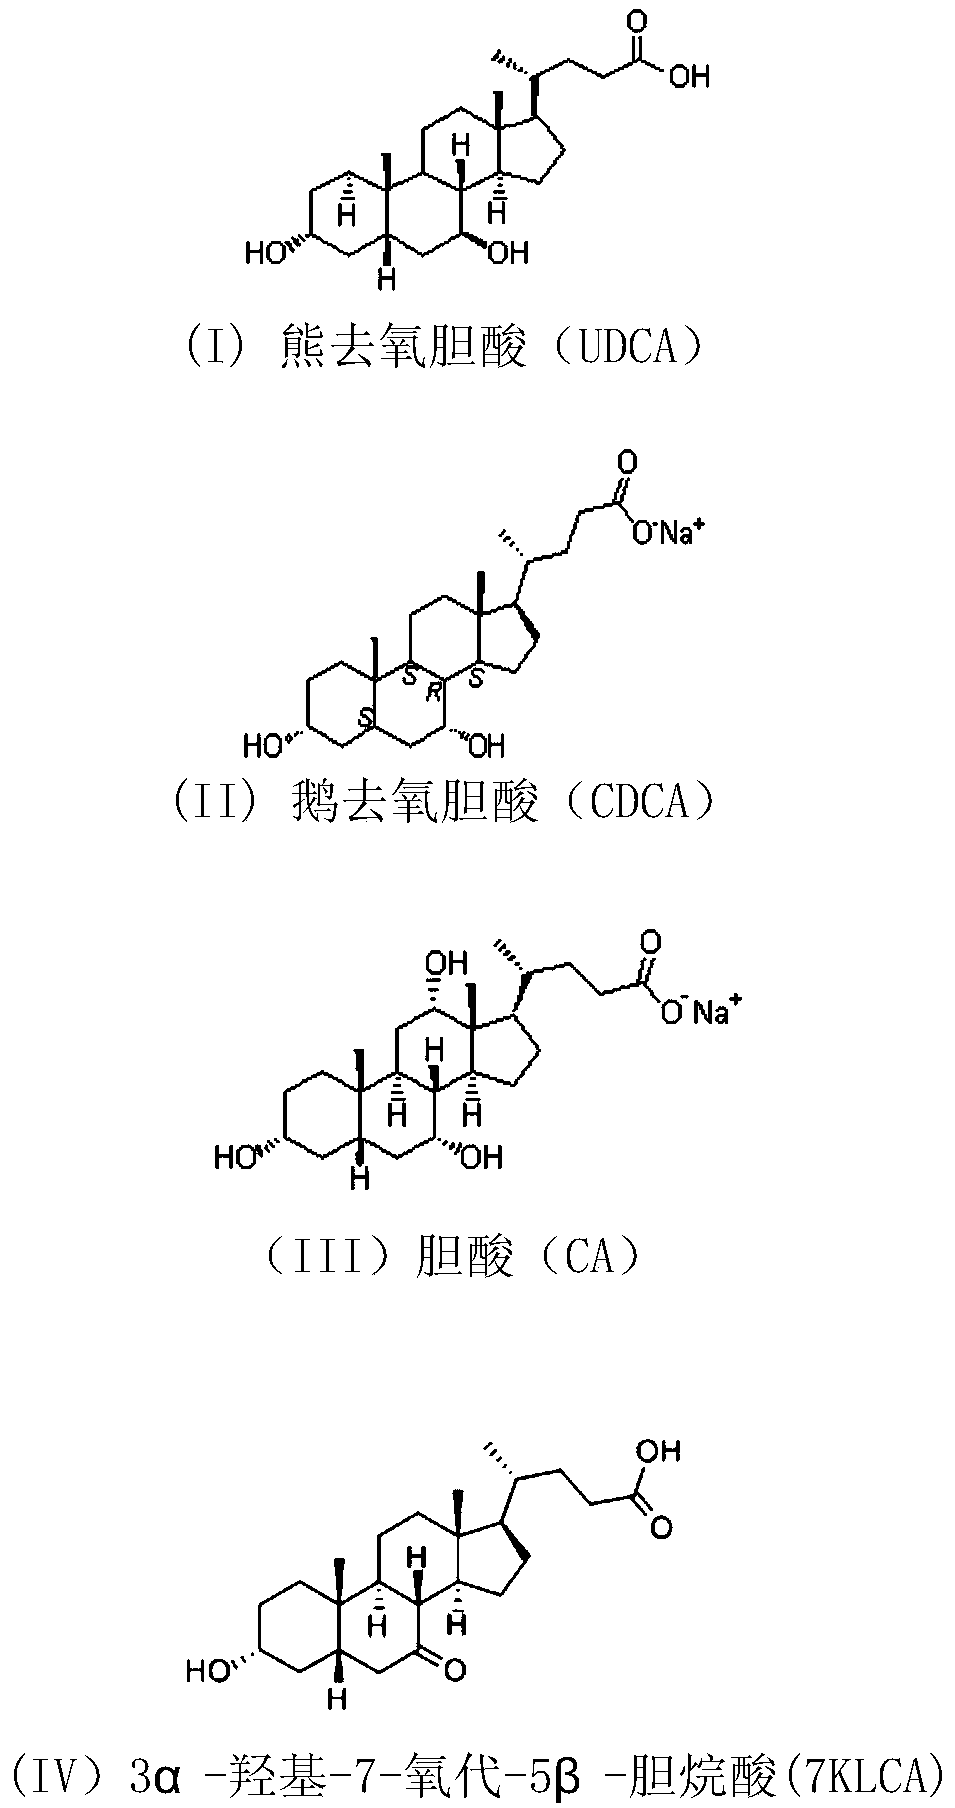 7β-hydroxysteroid dehydrogenase mutant, its application and synthesis method